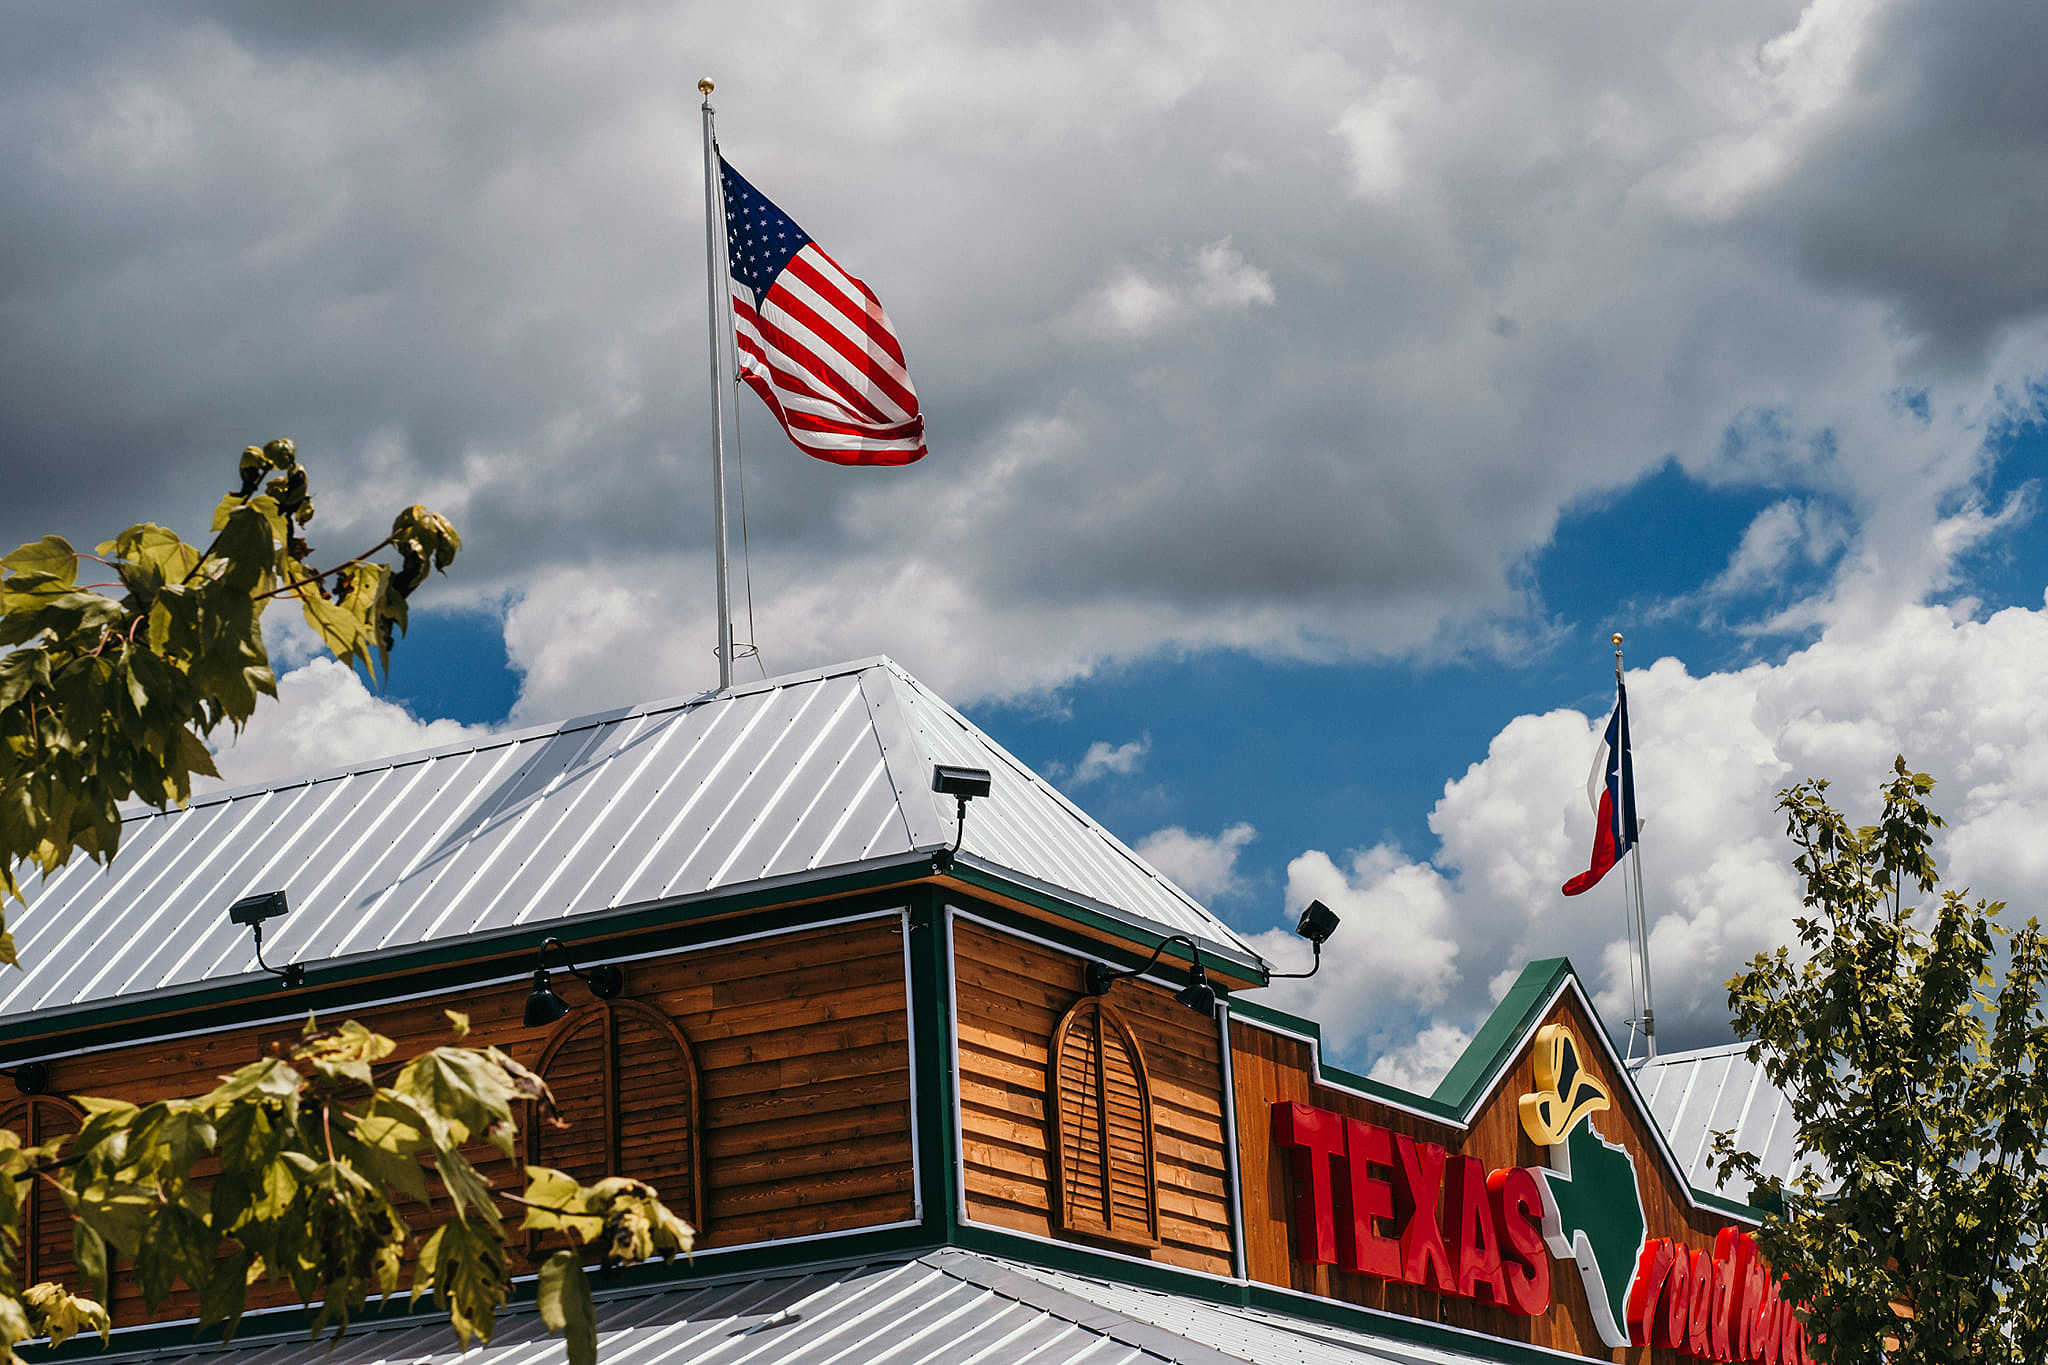 Yee-Haw! Texas Roadhouse Texarkana Now Open for Lunch image